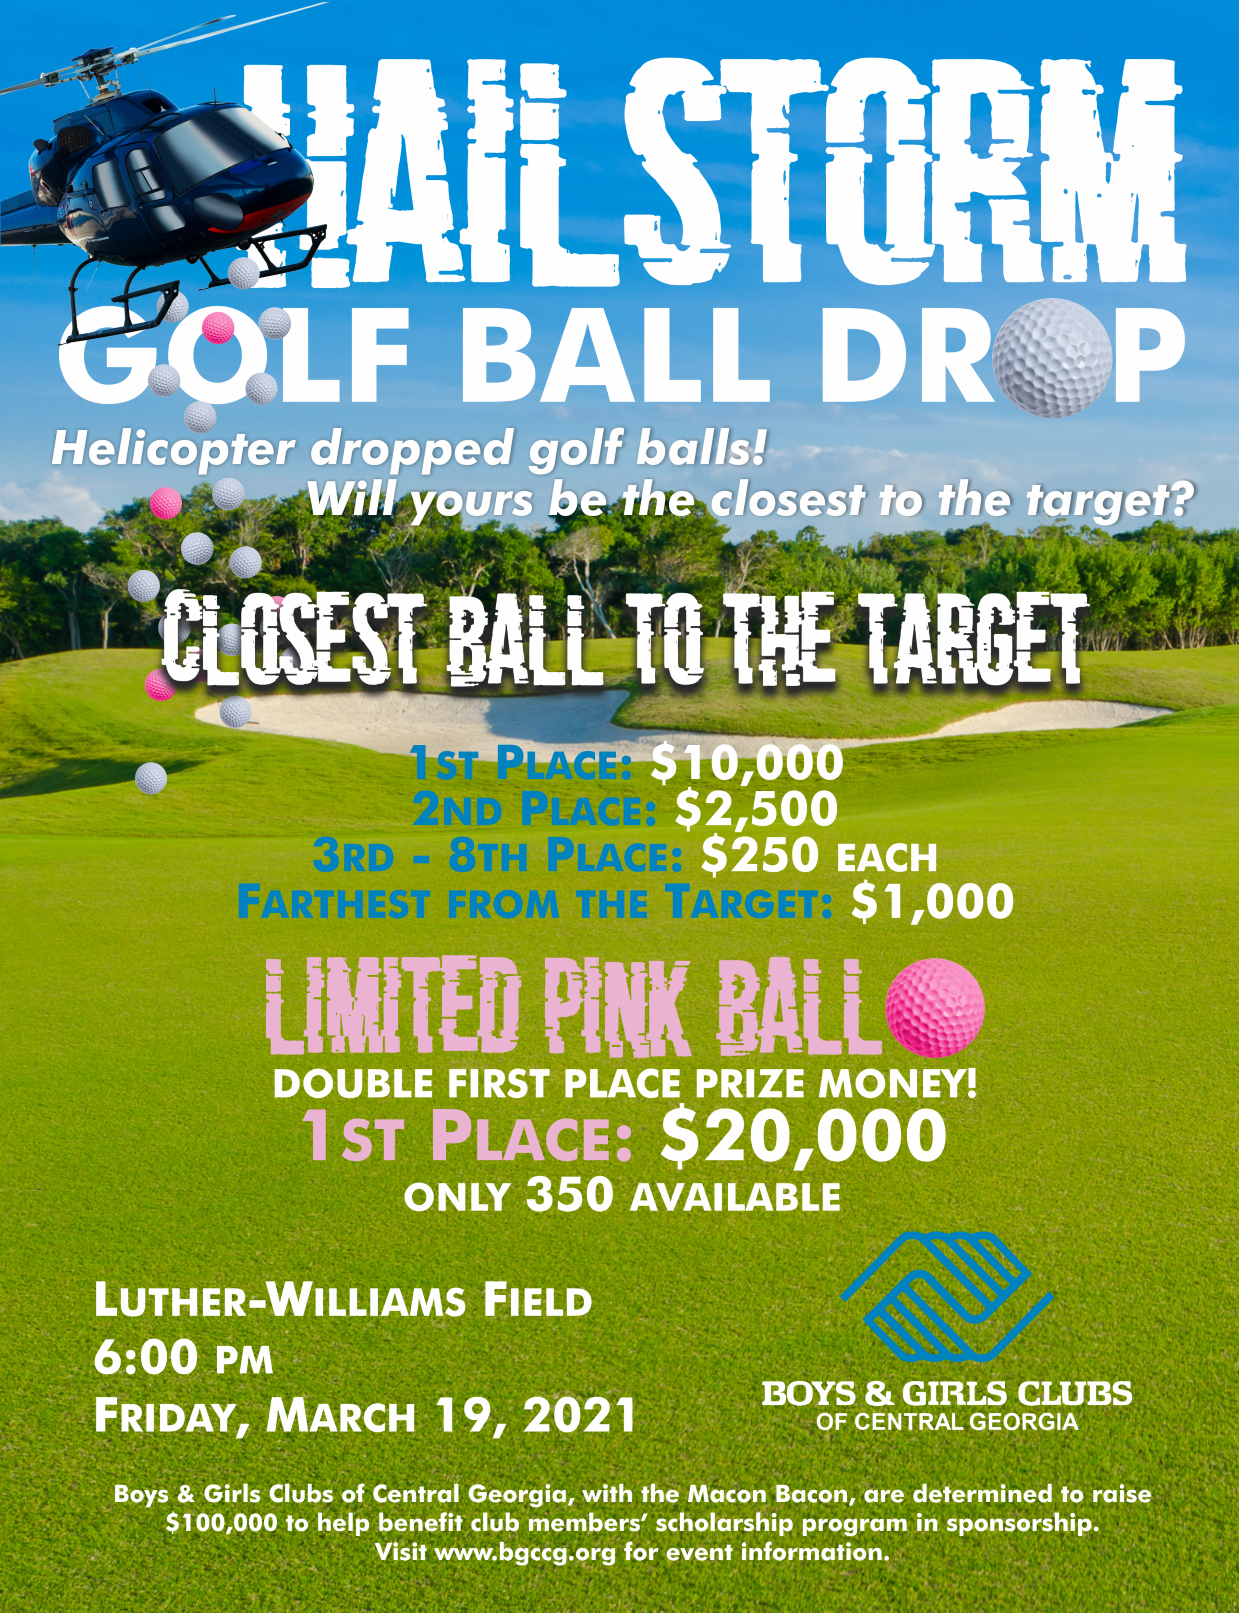 FM Hailstorm Golf Ball Drop